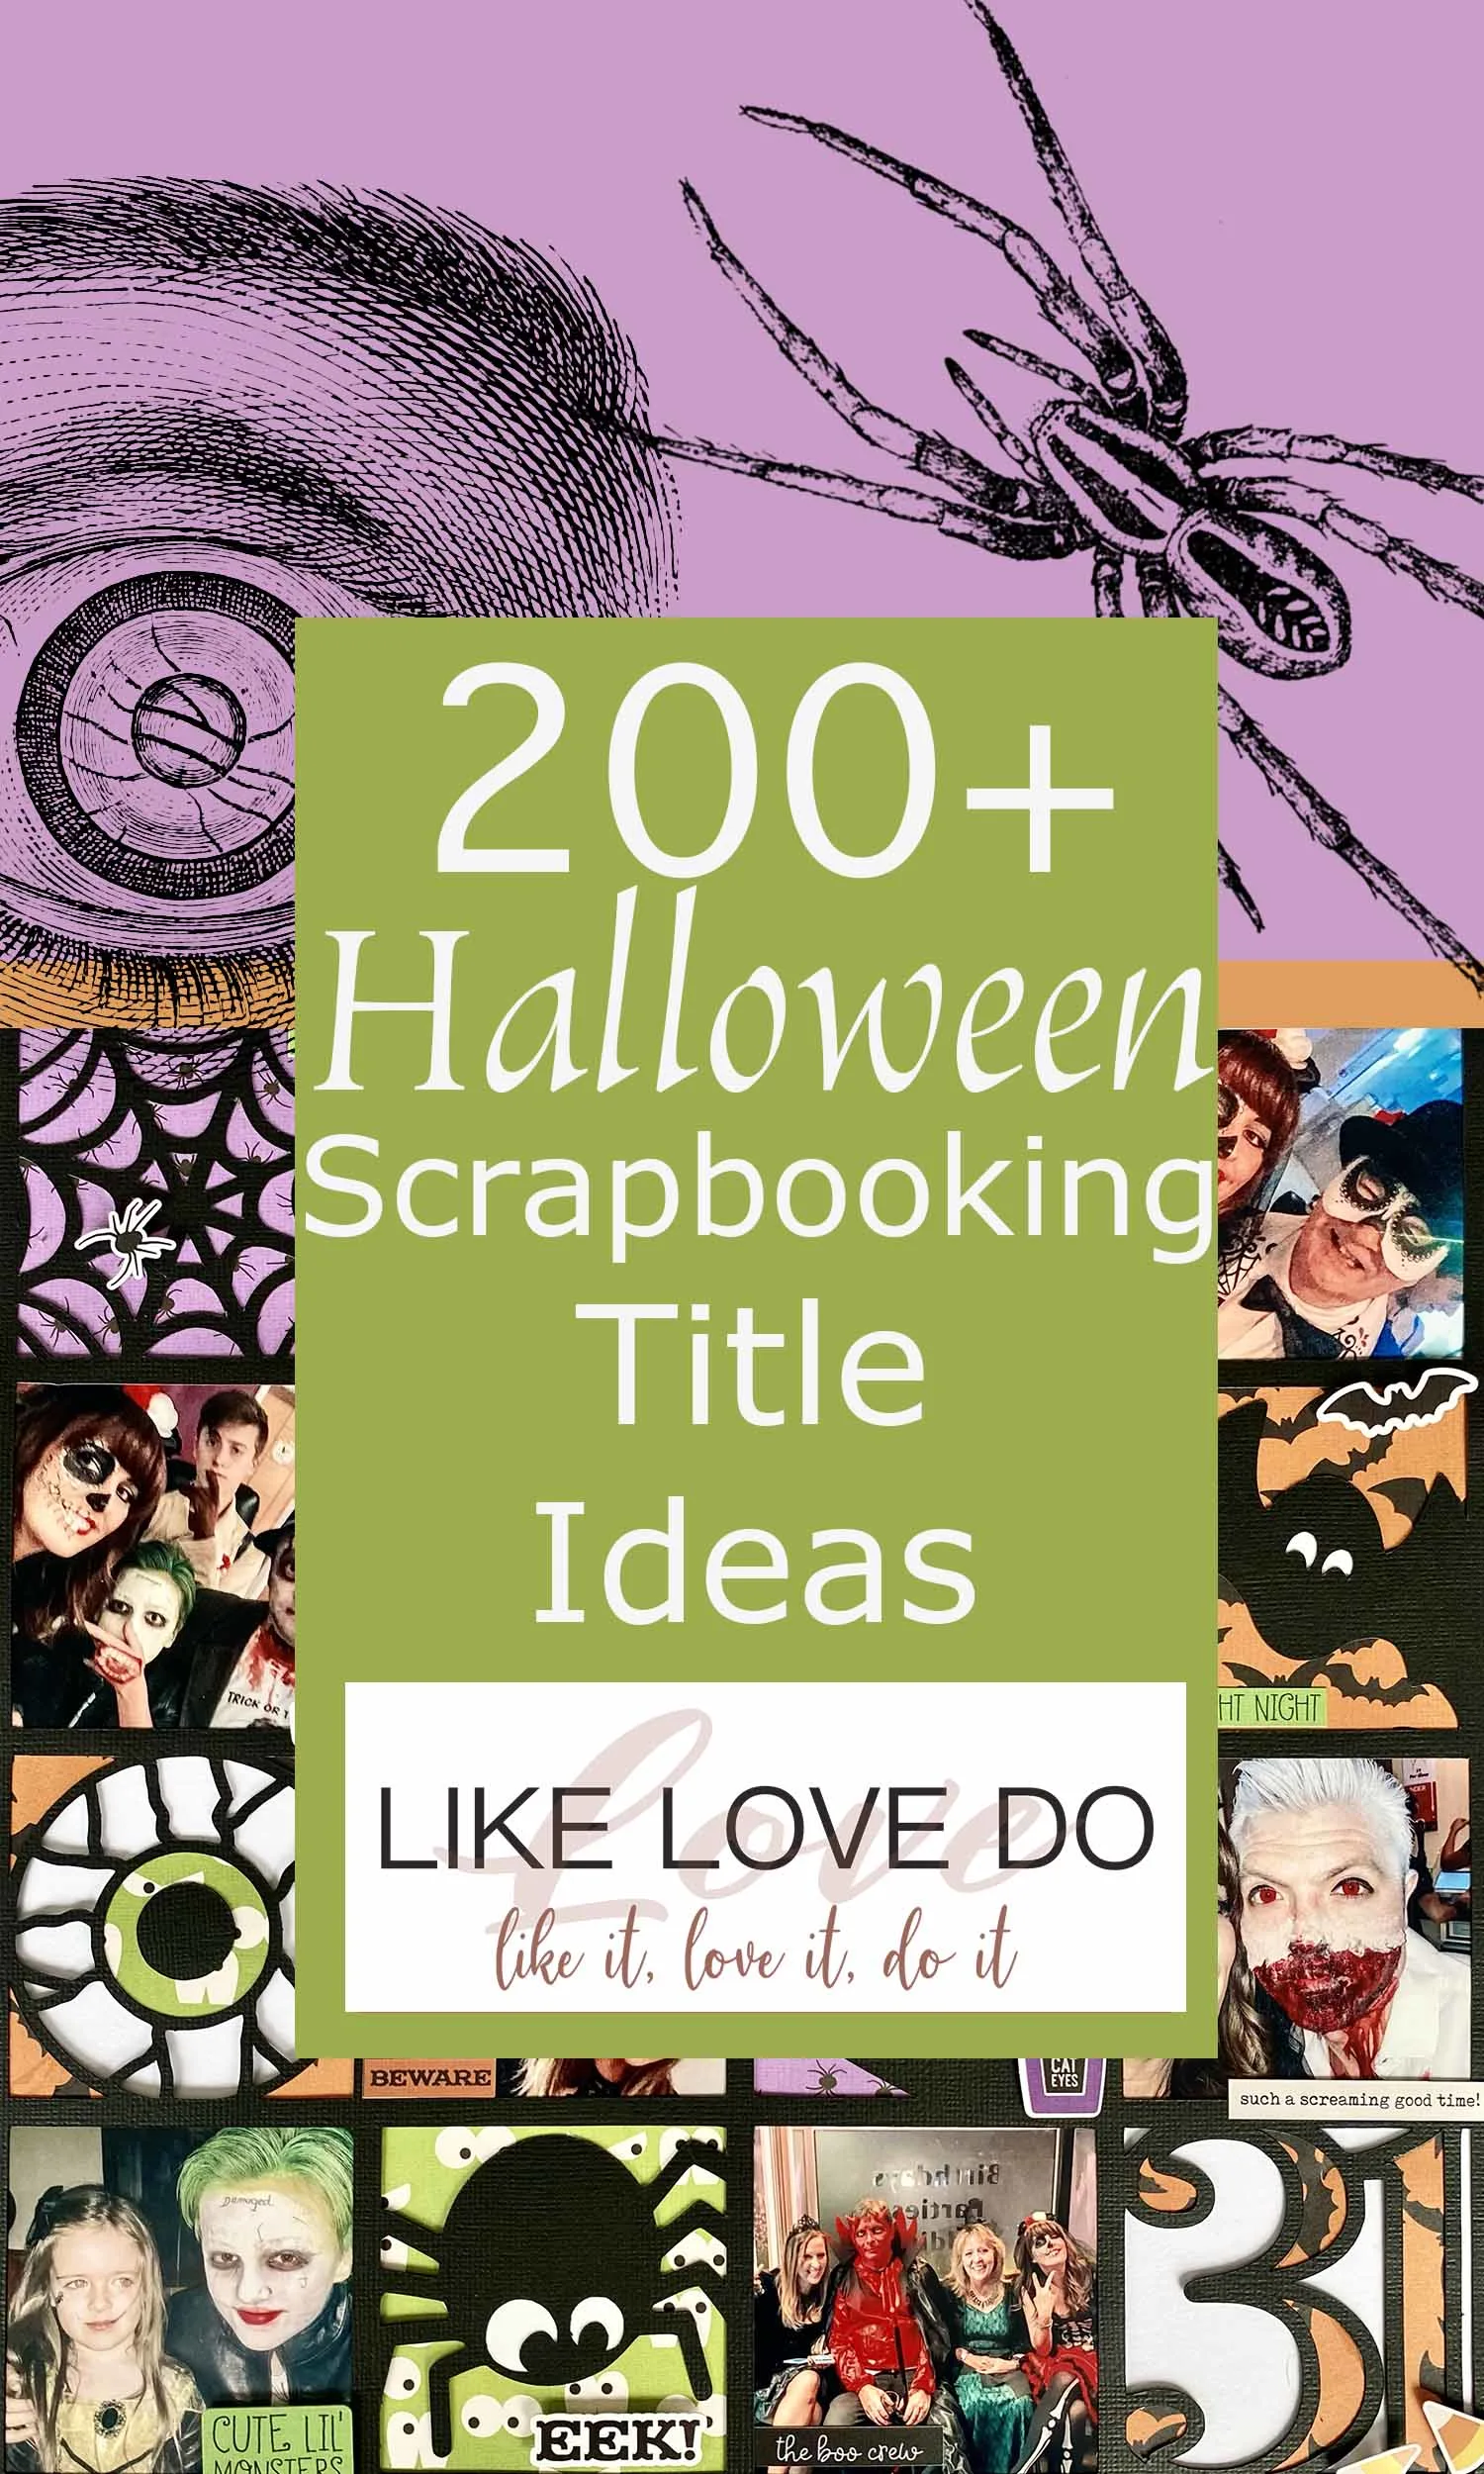 Halloween Titles for scrapbooking